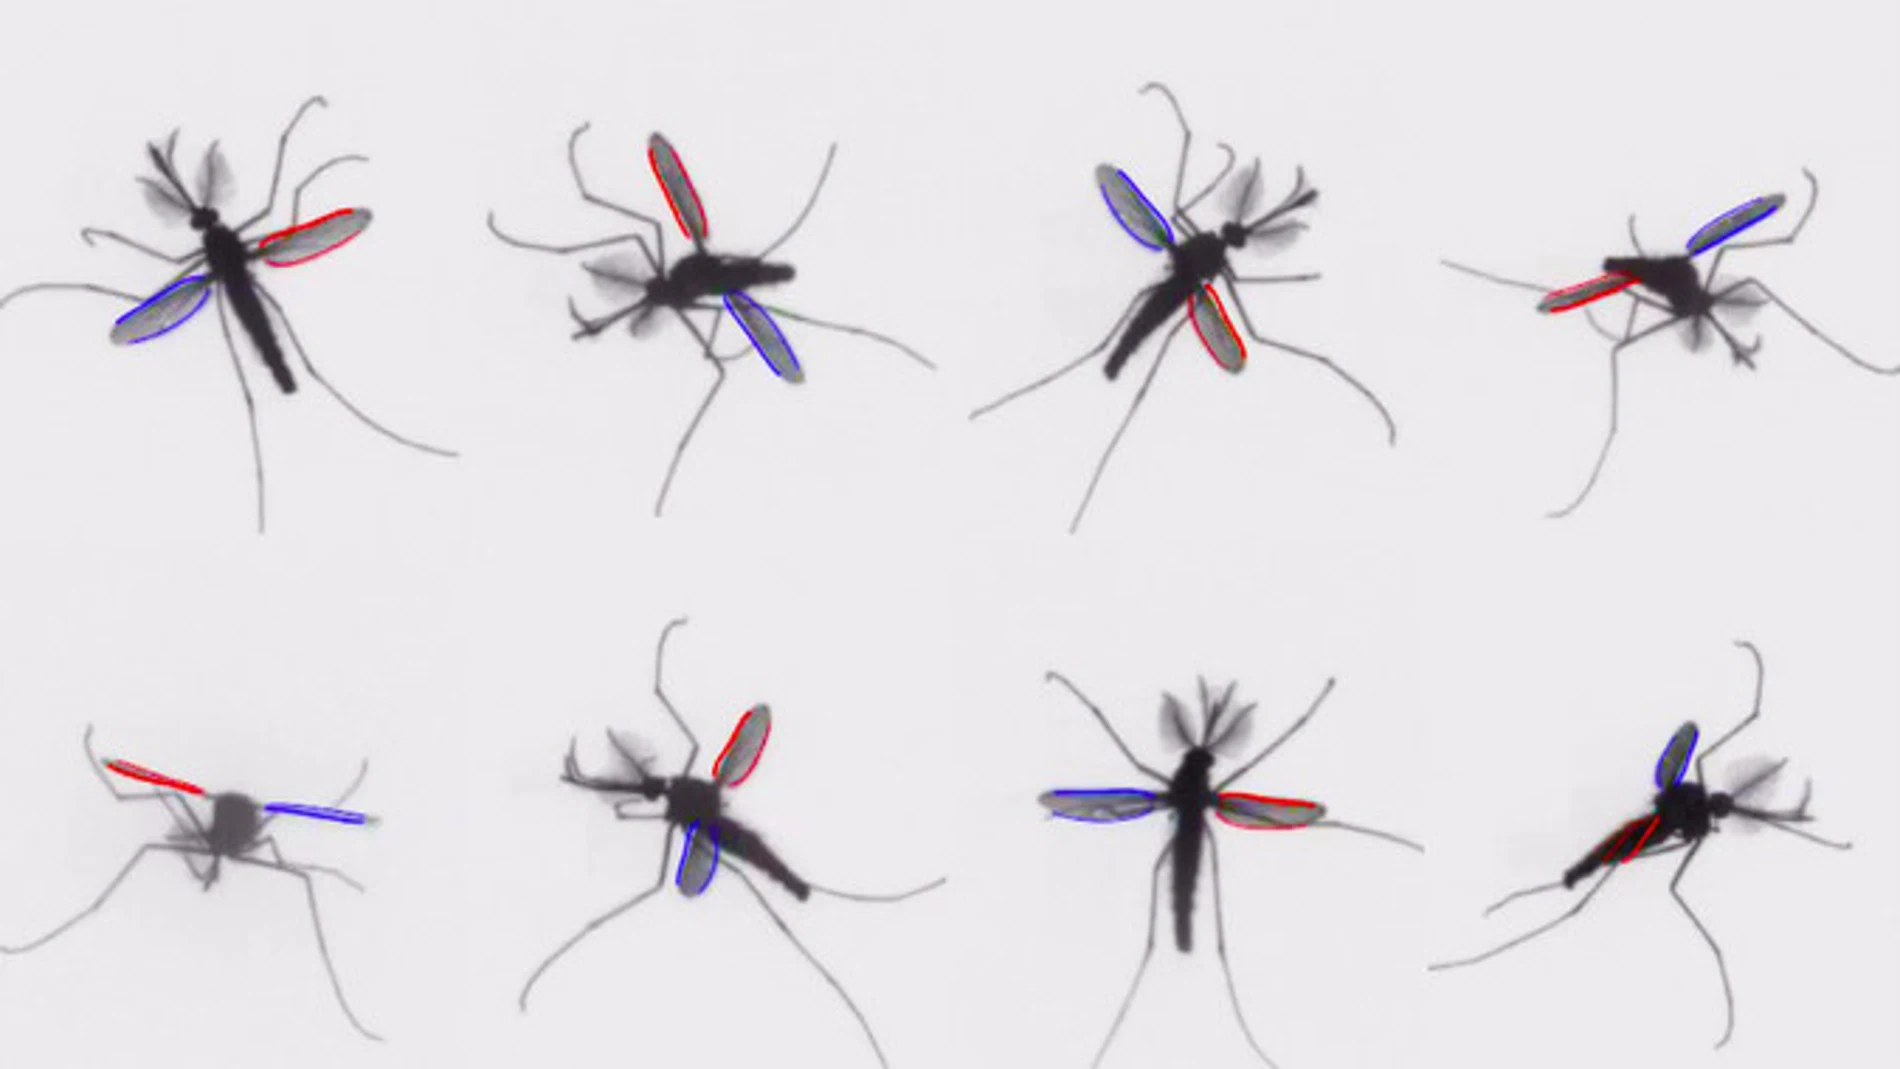 Los mosquitos usan un mecanismo inusual en el mundo de los insectos para volar